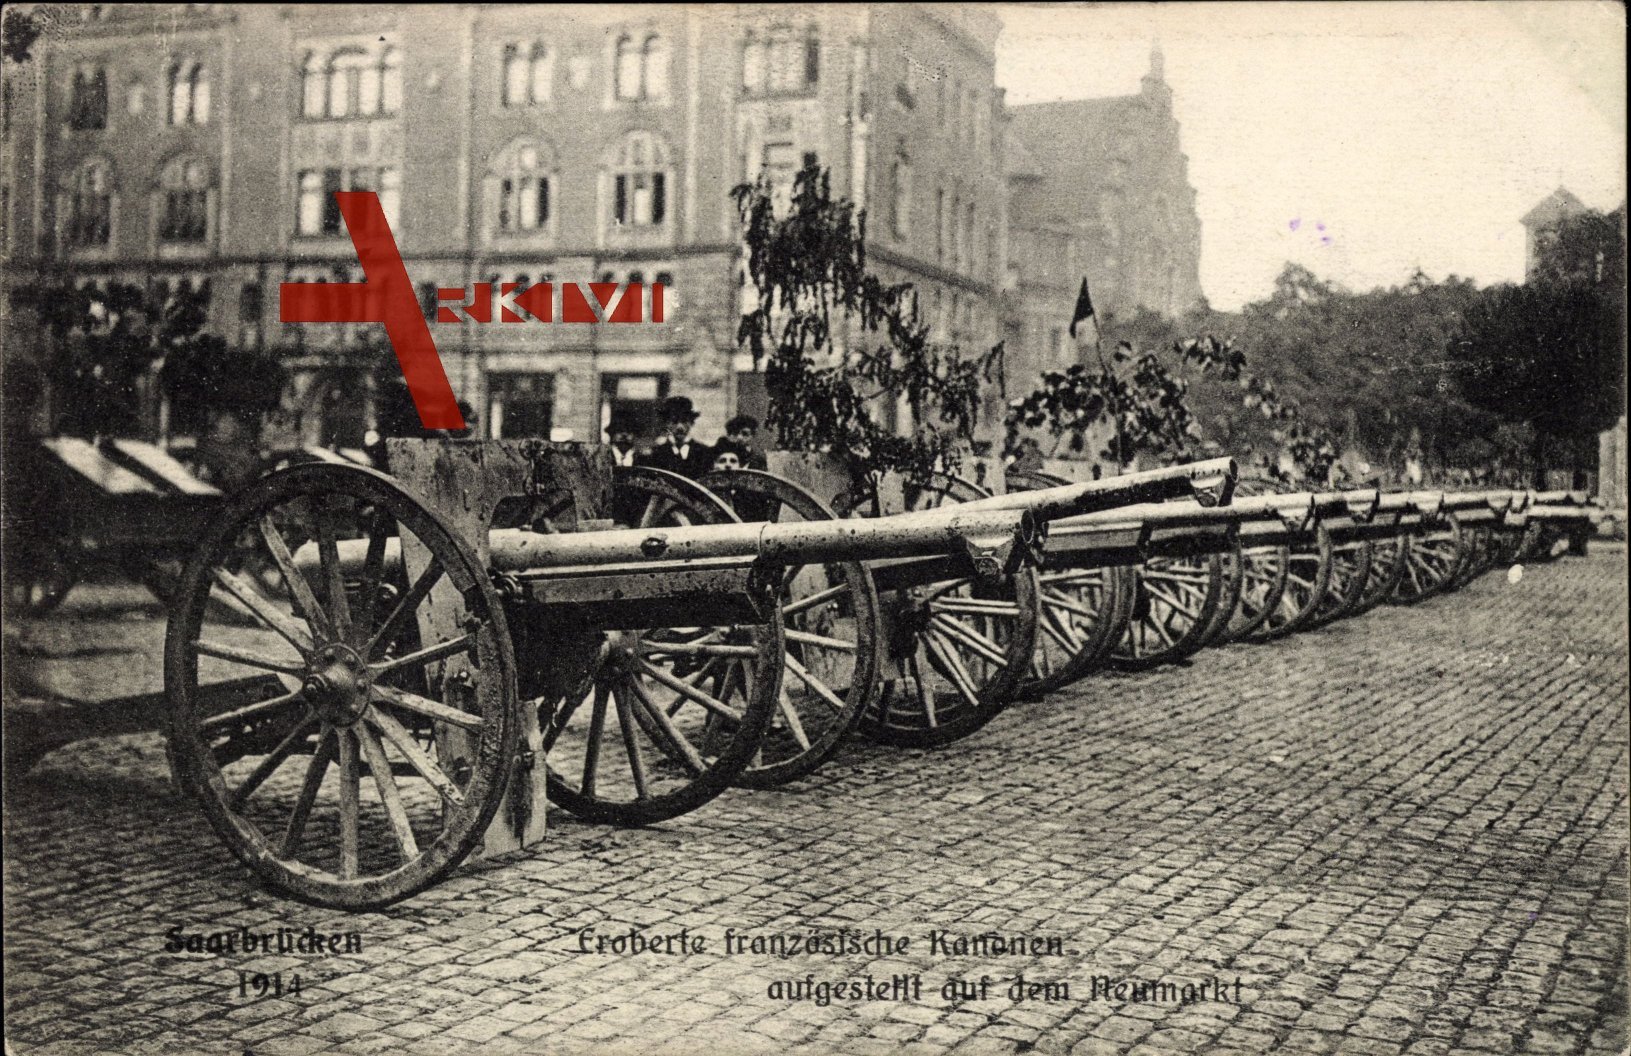 Saarbrücken, Eroberter Französische Kanonen auf dem Neumarkt